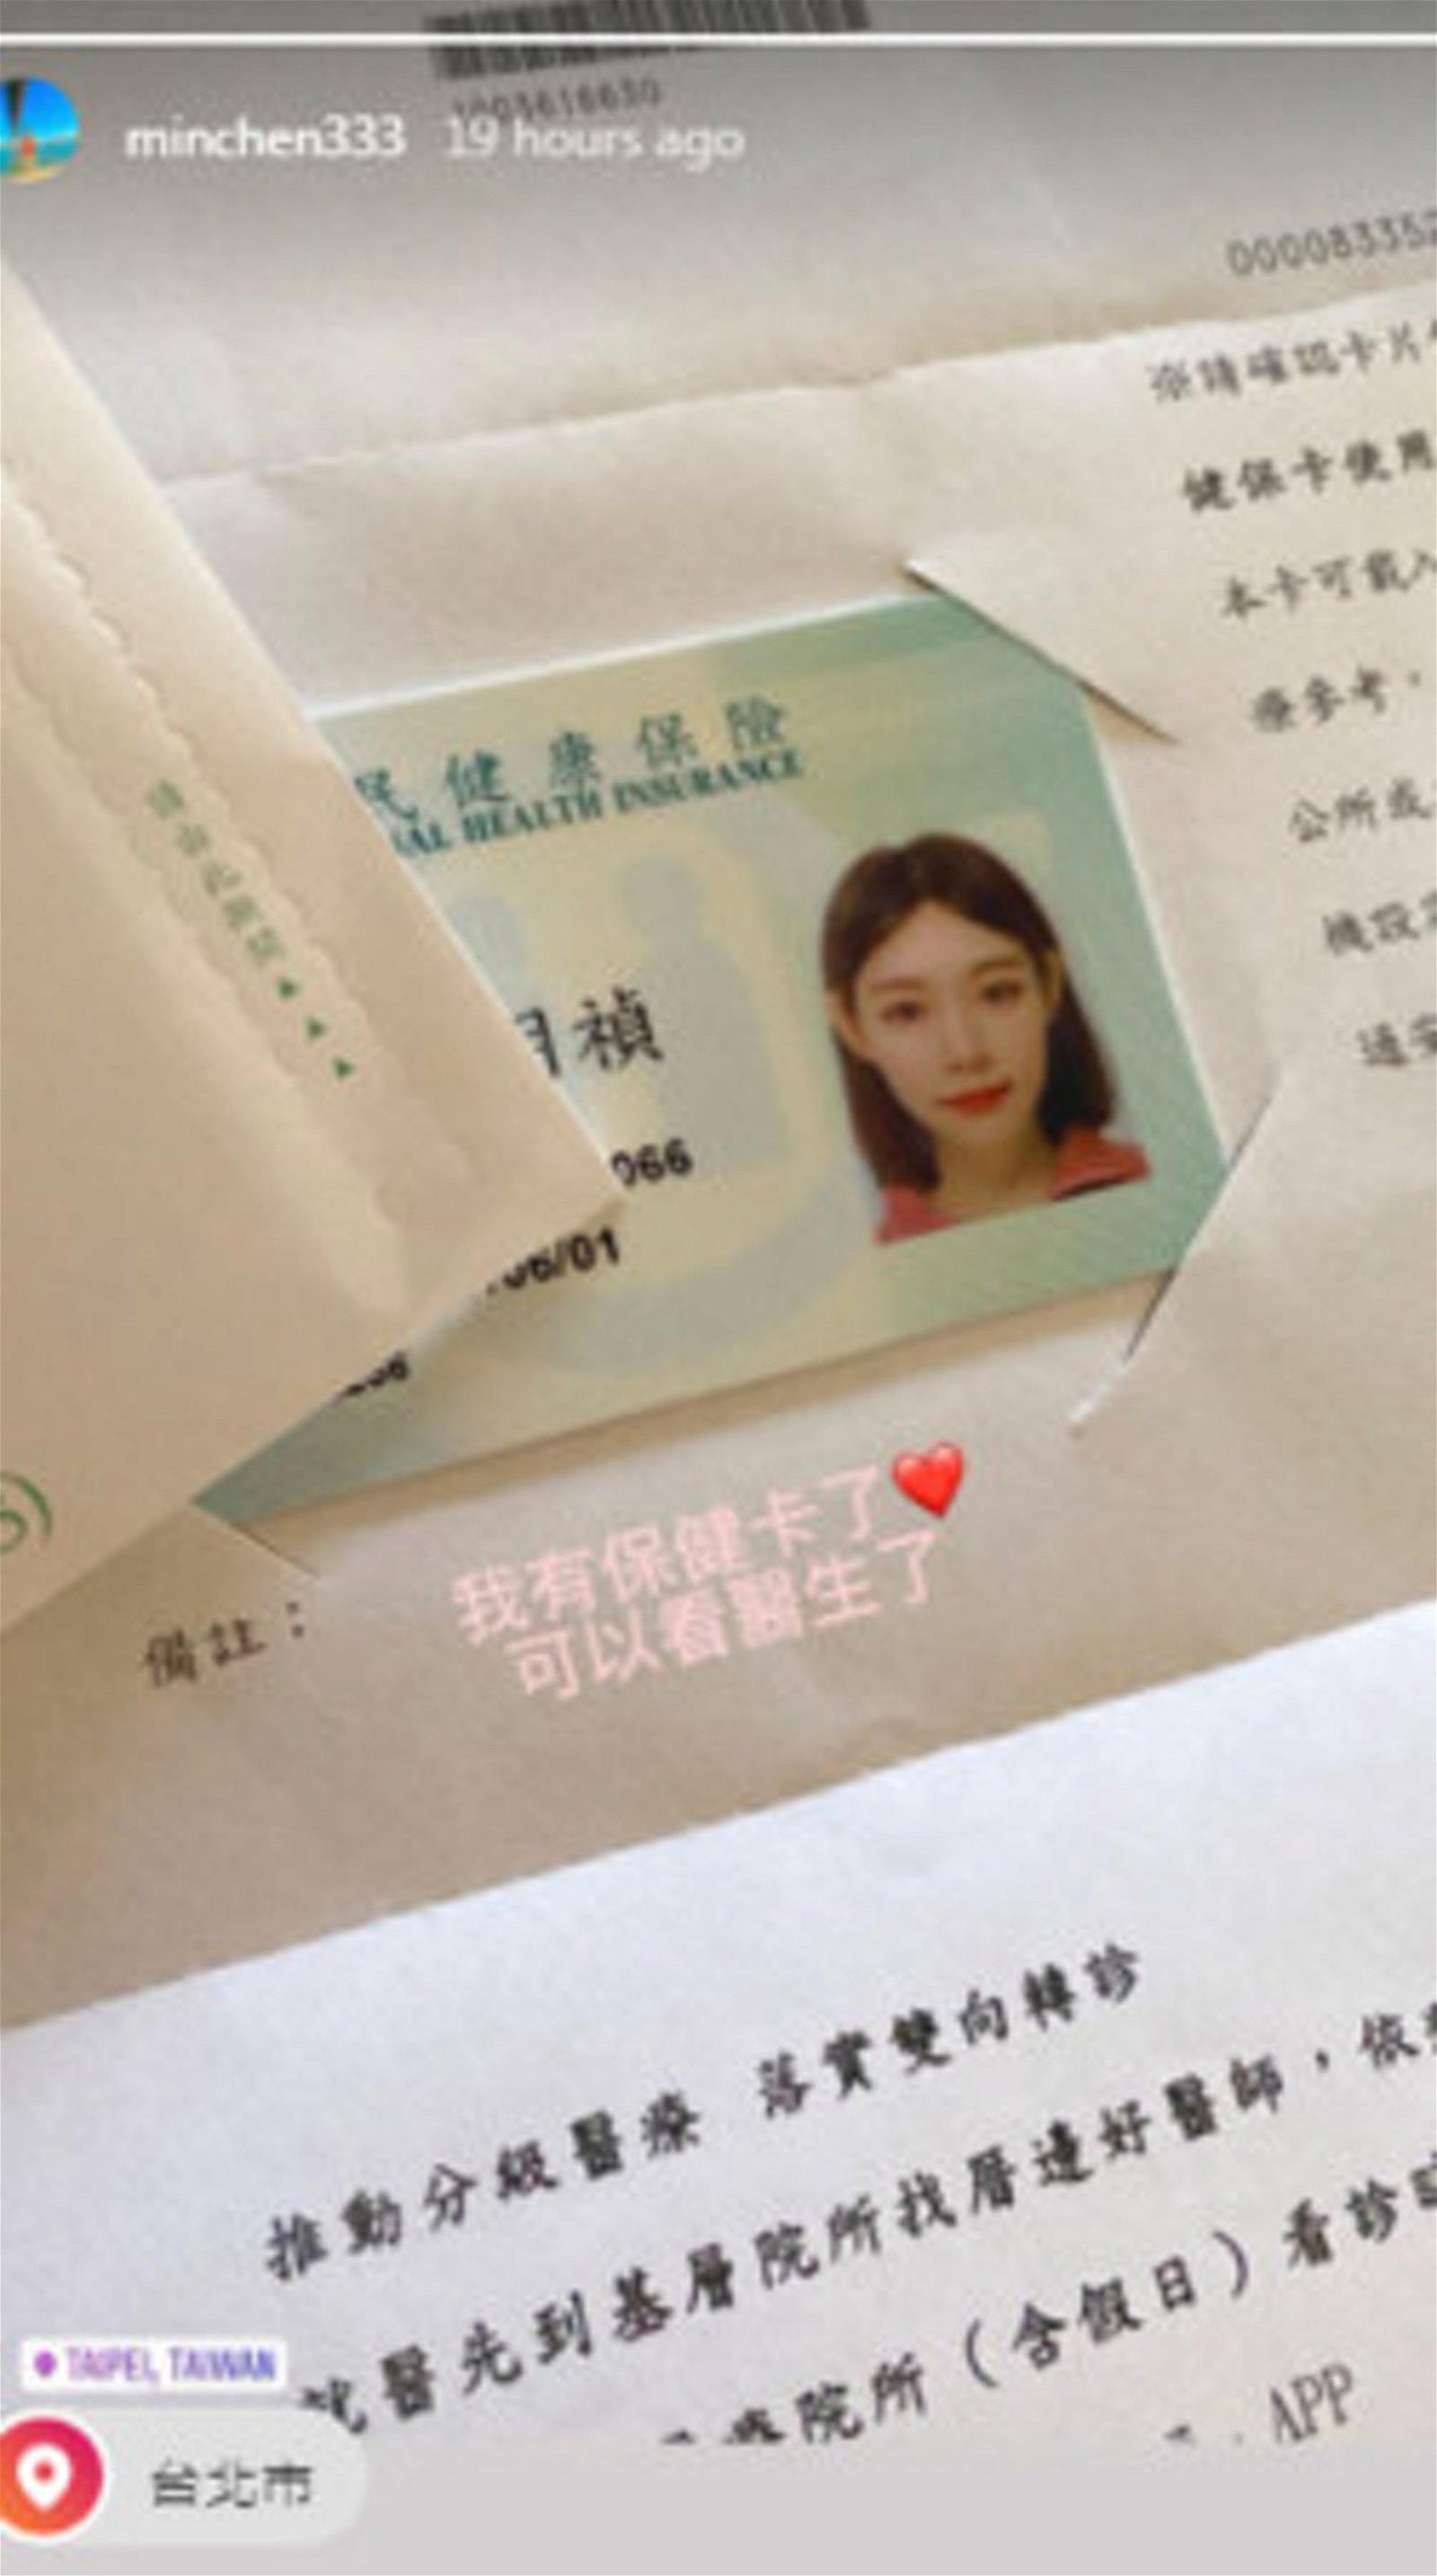 林明祯晒出健保卡，网民聚焦在她不修图一样漂亮的脸蛋上。